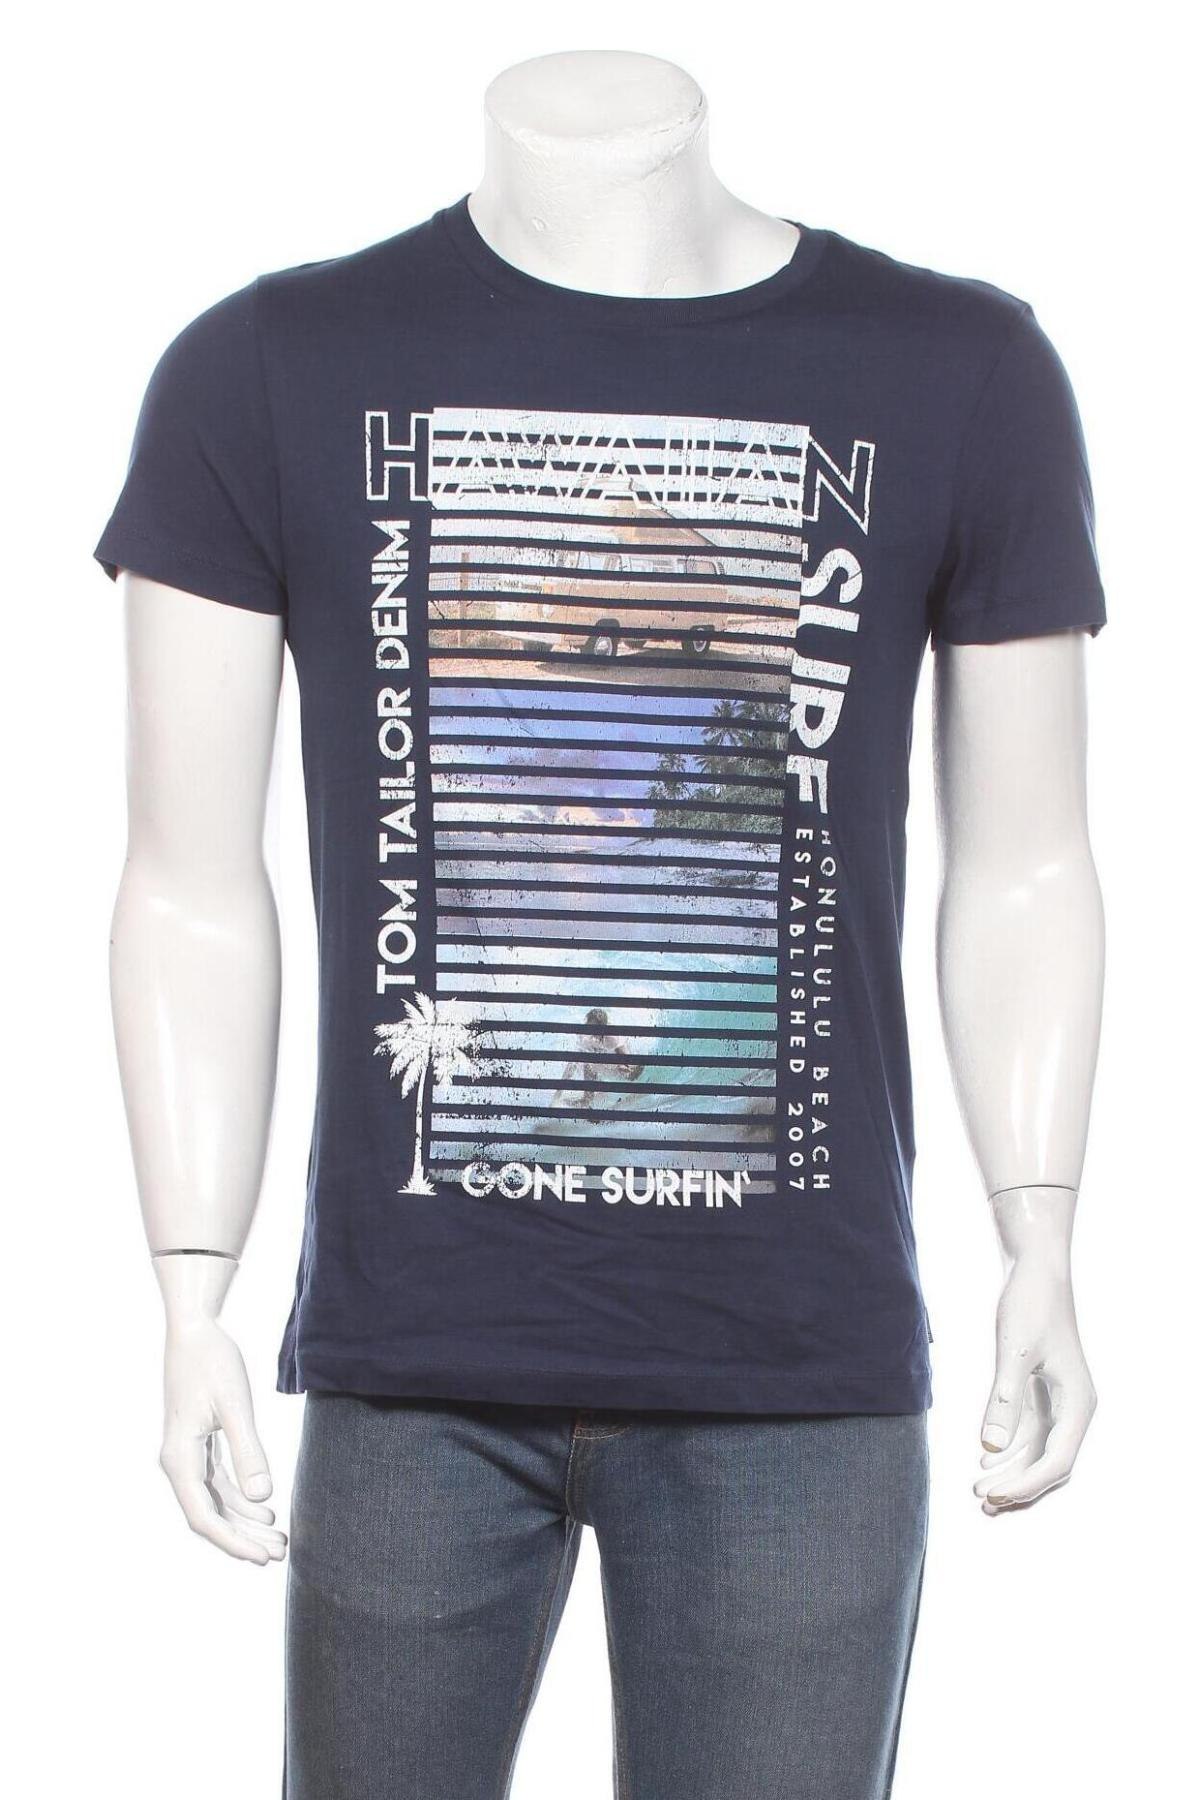 Herren T-Shirt Tom Tailor, Größe M, Farbe Blau, Baumwolle, Preis 21,47 €